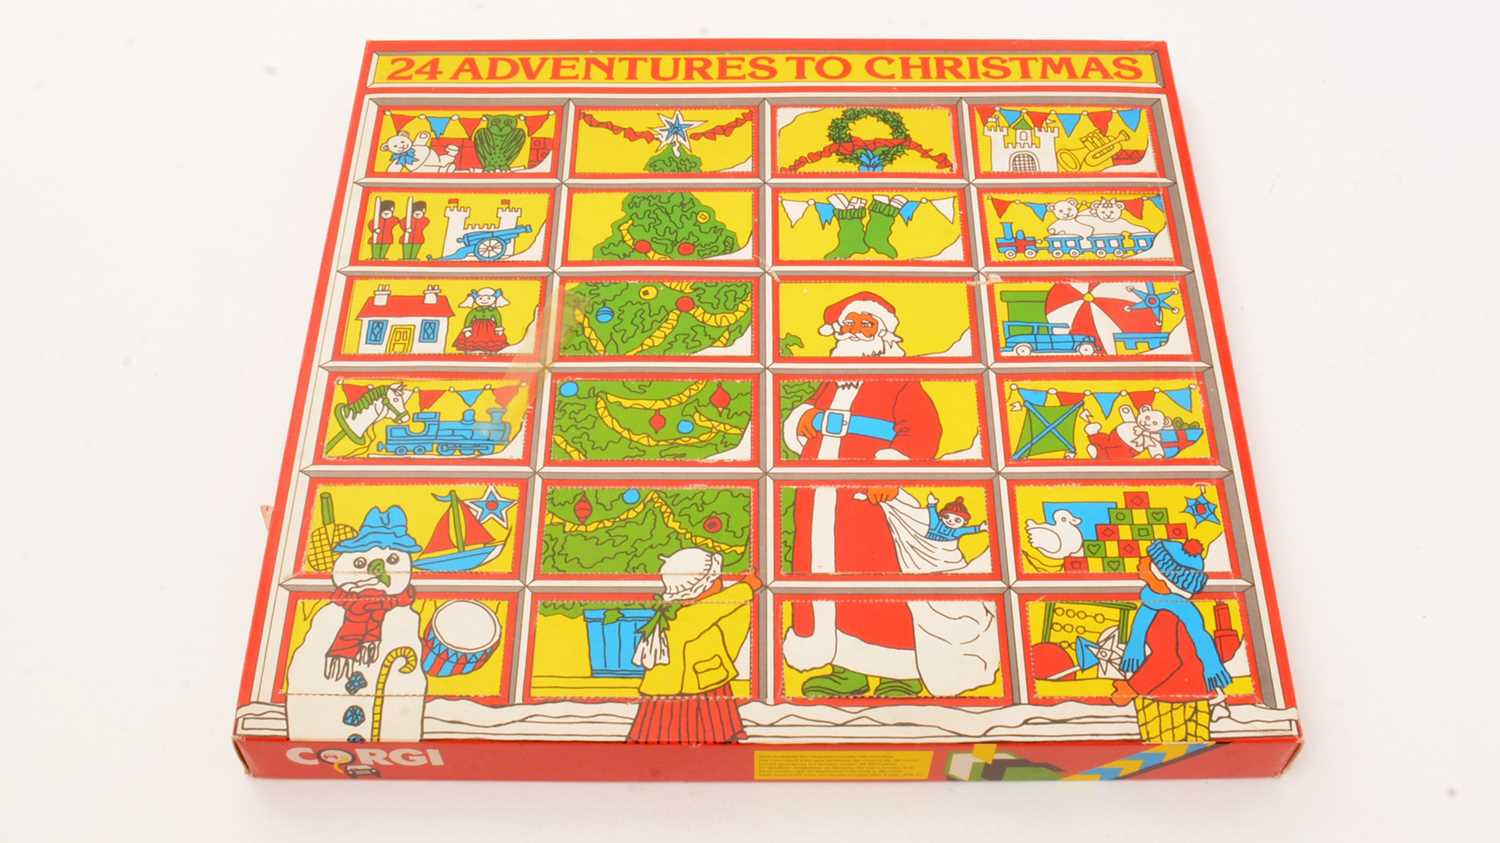 Lot 260 - Corgi Advent Calendar, 24 Adventures to Christmas